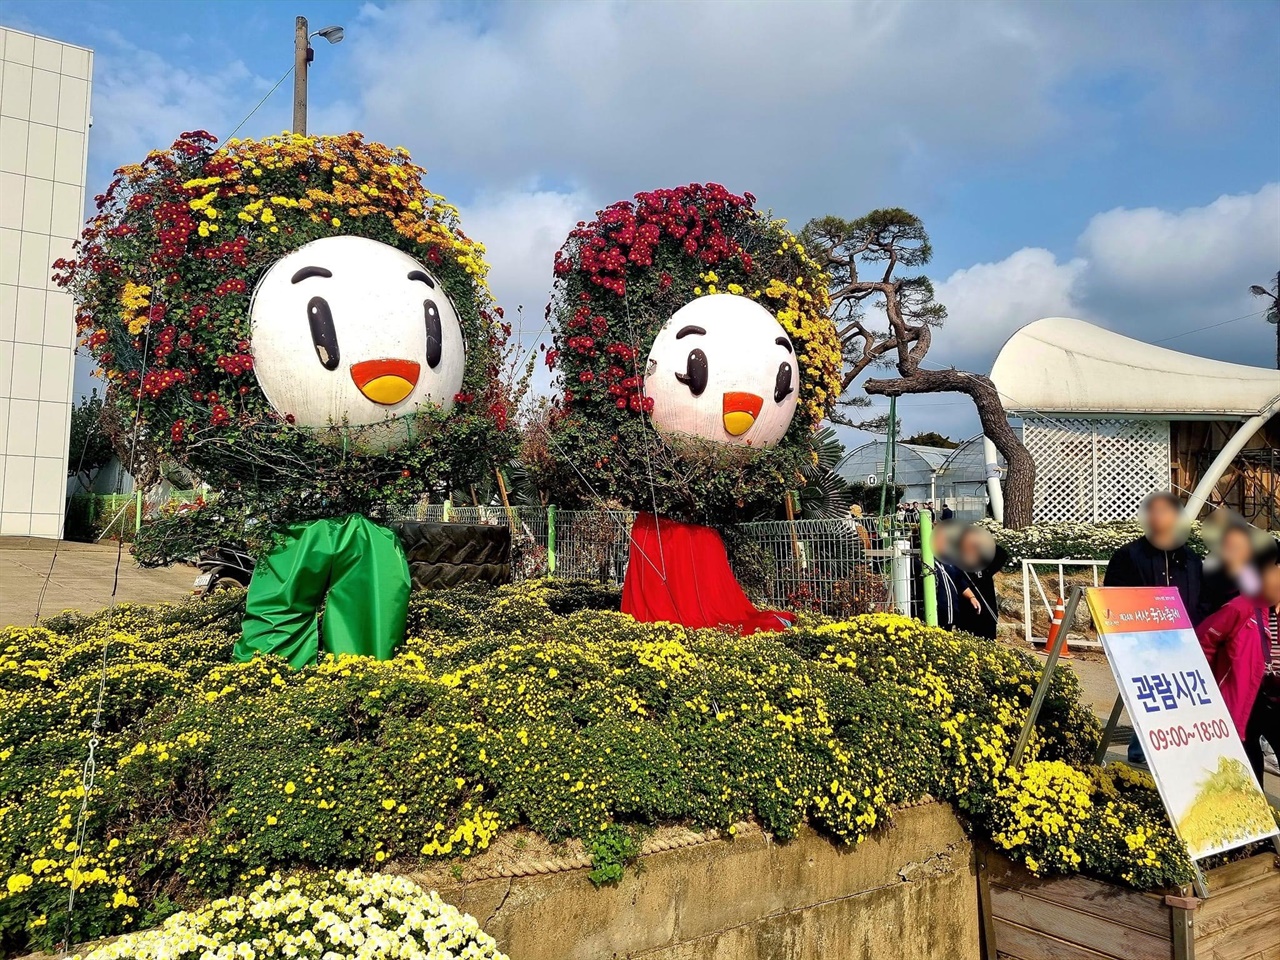 축제장 입구에는 국화꽃을 입은 서산시 캐릭터 해누리, 해나리가 방문객들을 반기고 있다. 